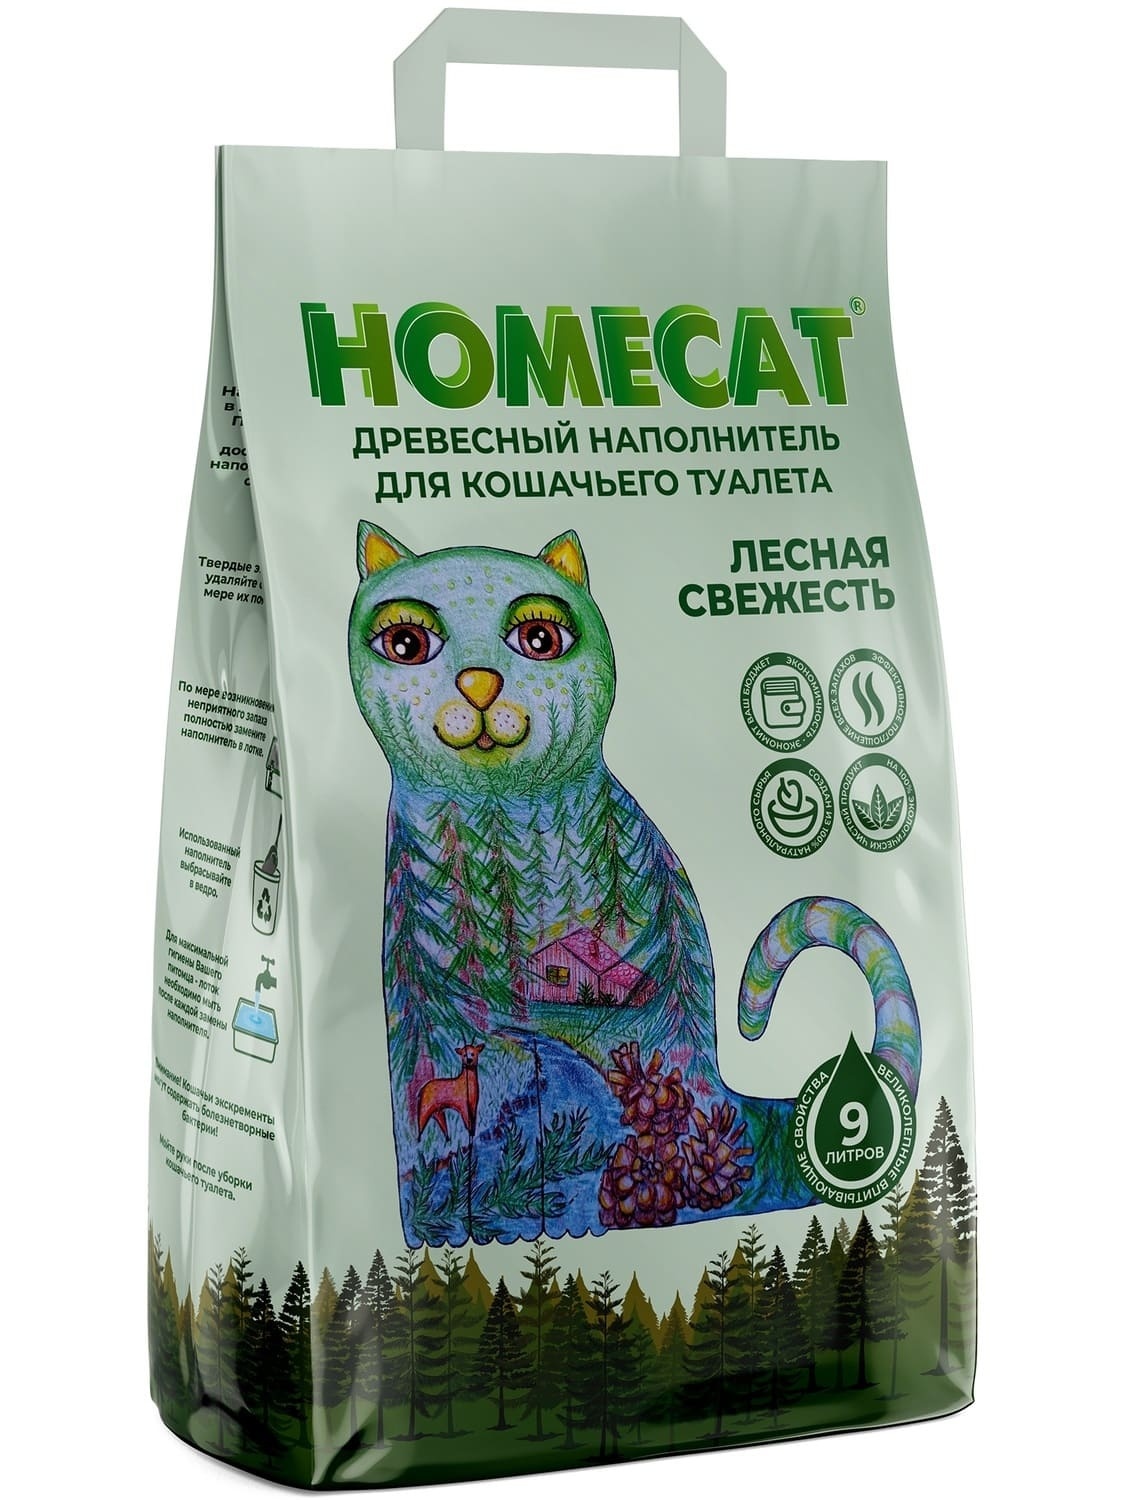 Homecat наполнитель Homecat наполнитель древесный наполнитель, мелкие гранулы (5,3 кг) homecat наполнитель homecat наполнитель комкующийся наполнитель 10 кг